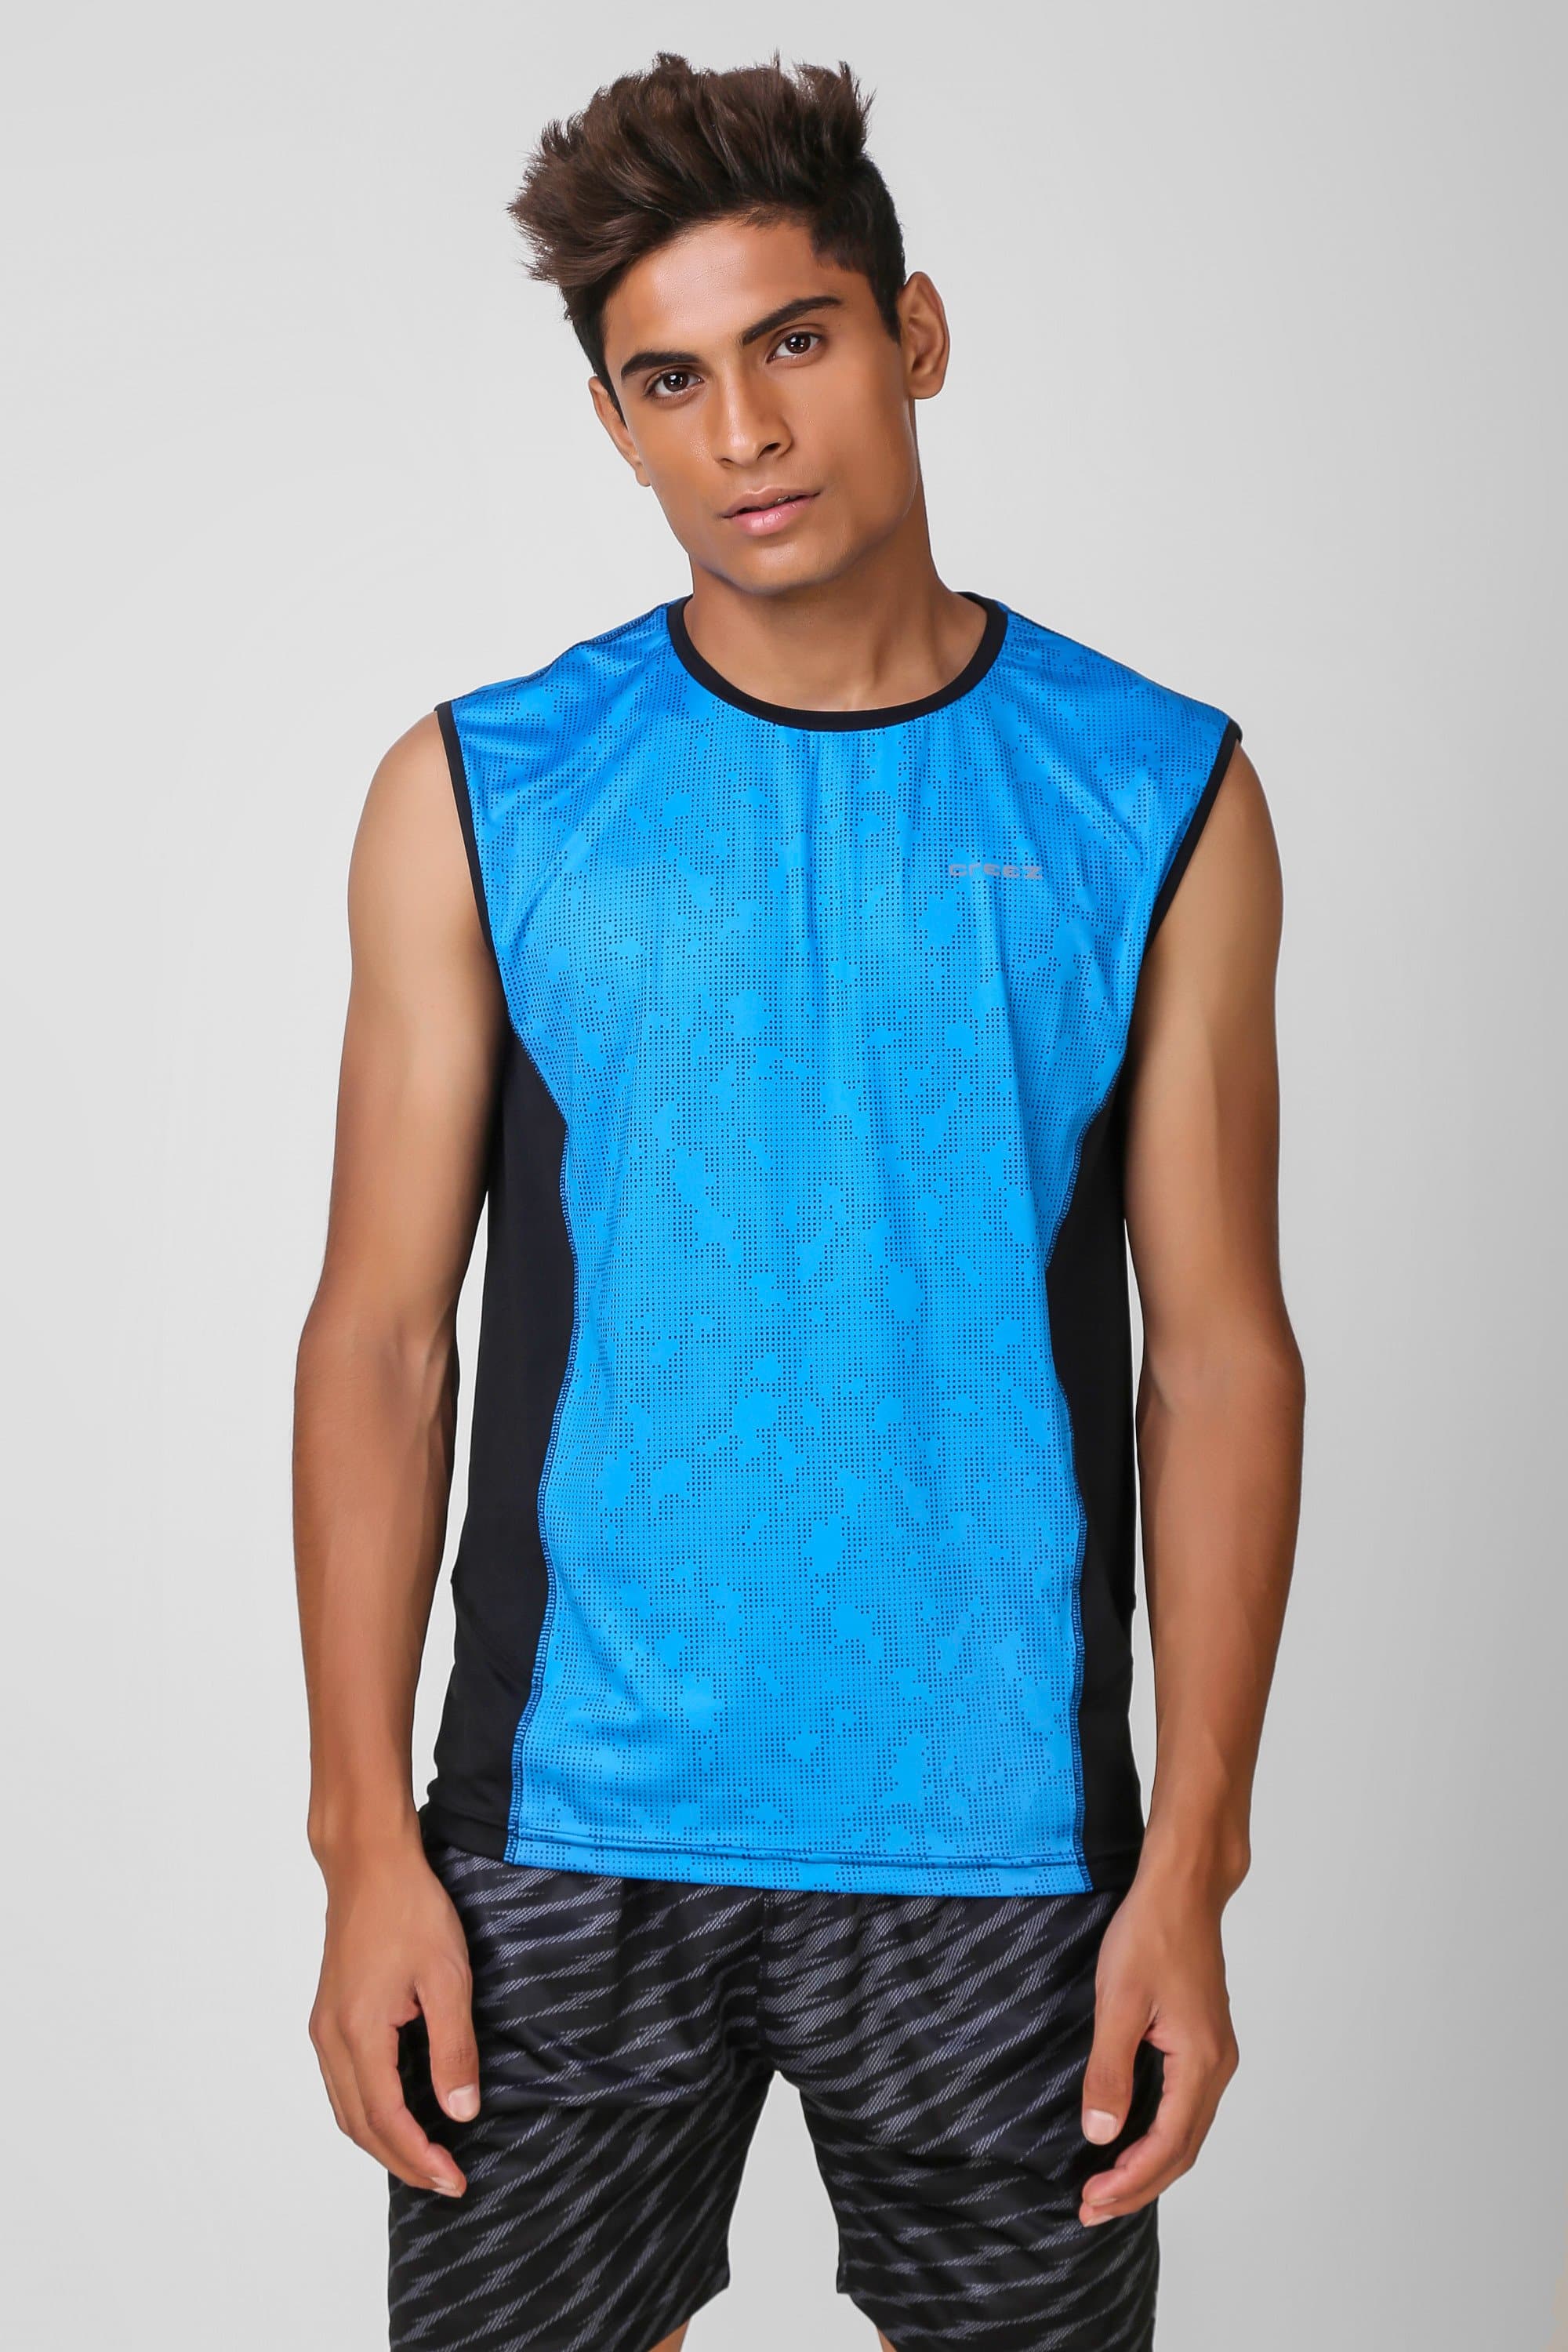 Camo Print Stretchable Sleeveless Tshirt 2